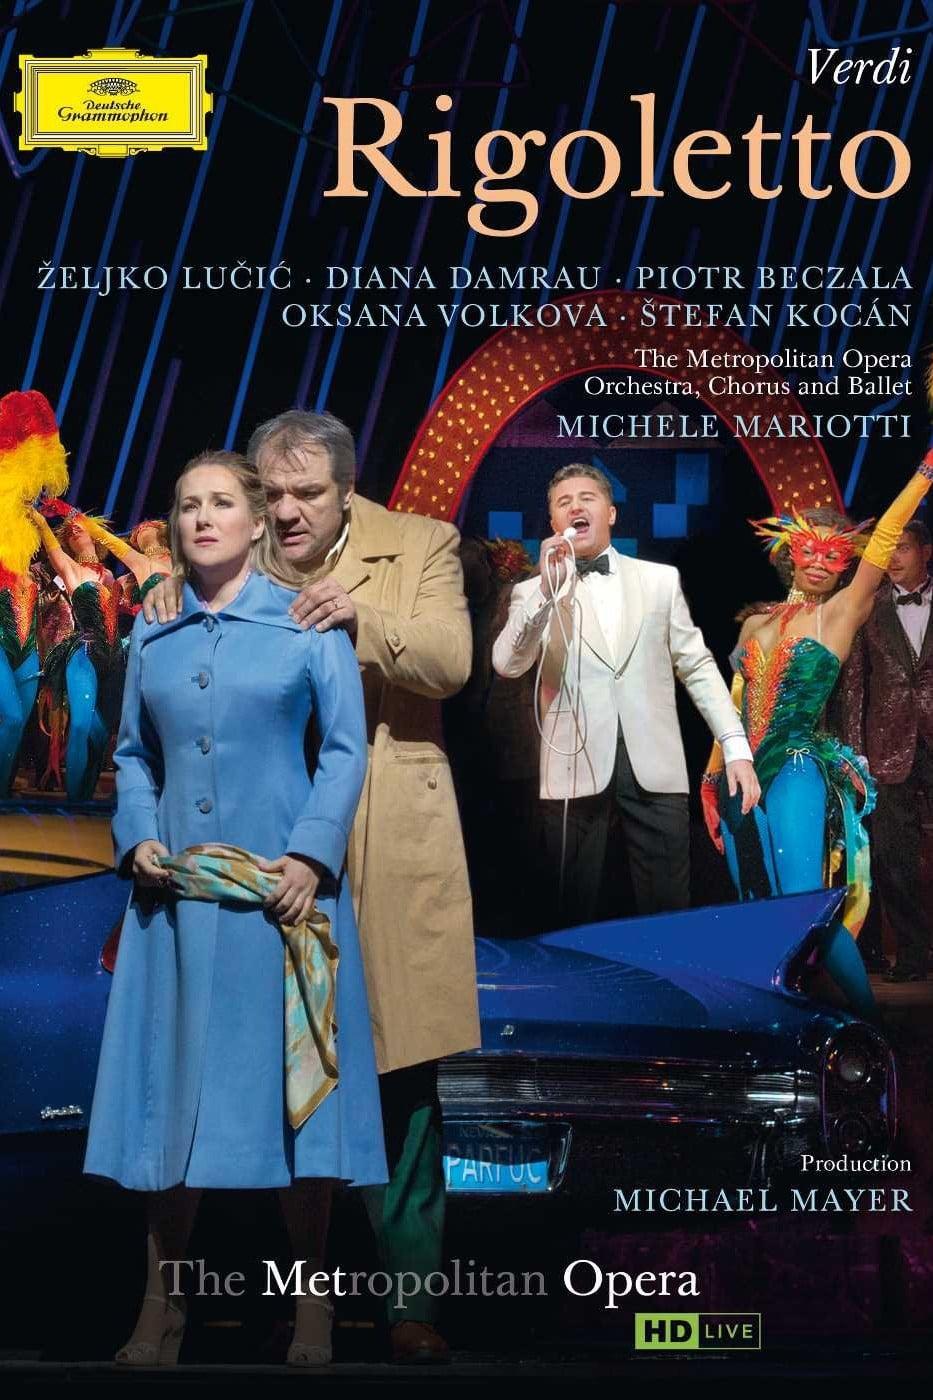 The Metropolitan Opera: Rigoletto poster